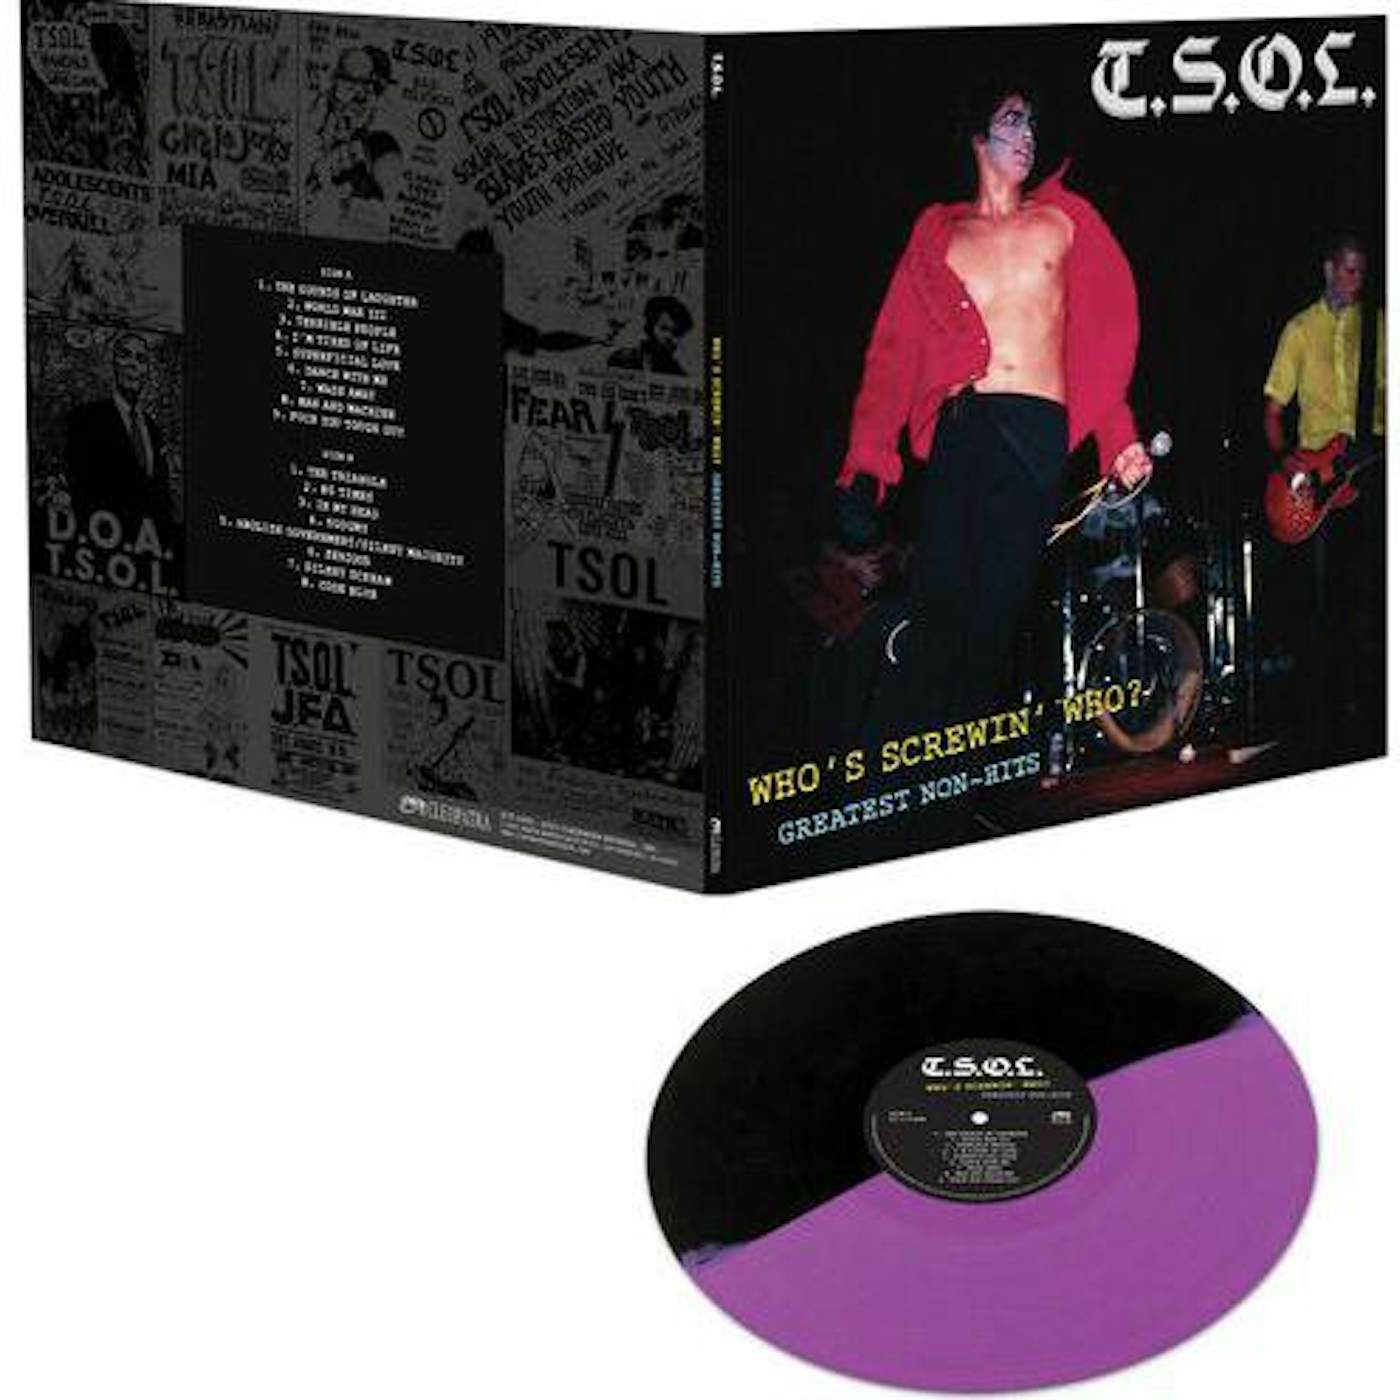 T.S.O.L. Who's Screwin' Who? Greatest Non-hits Vinyl Record